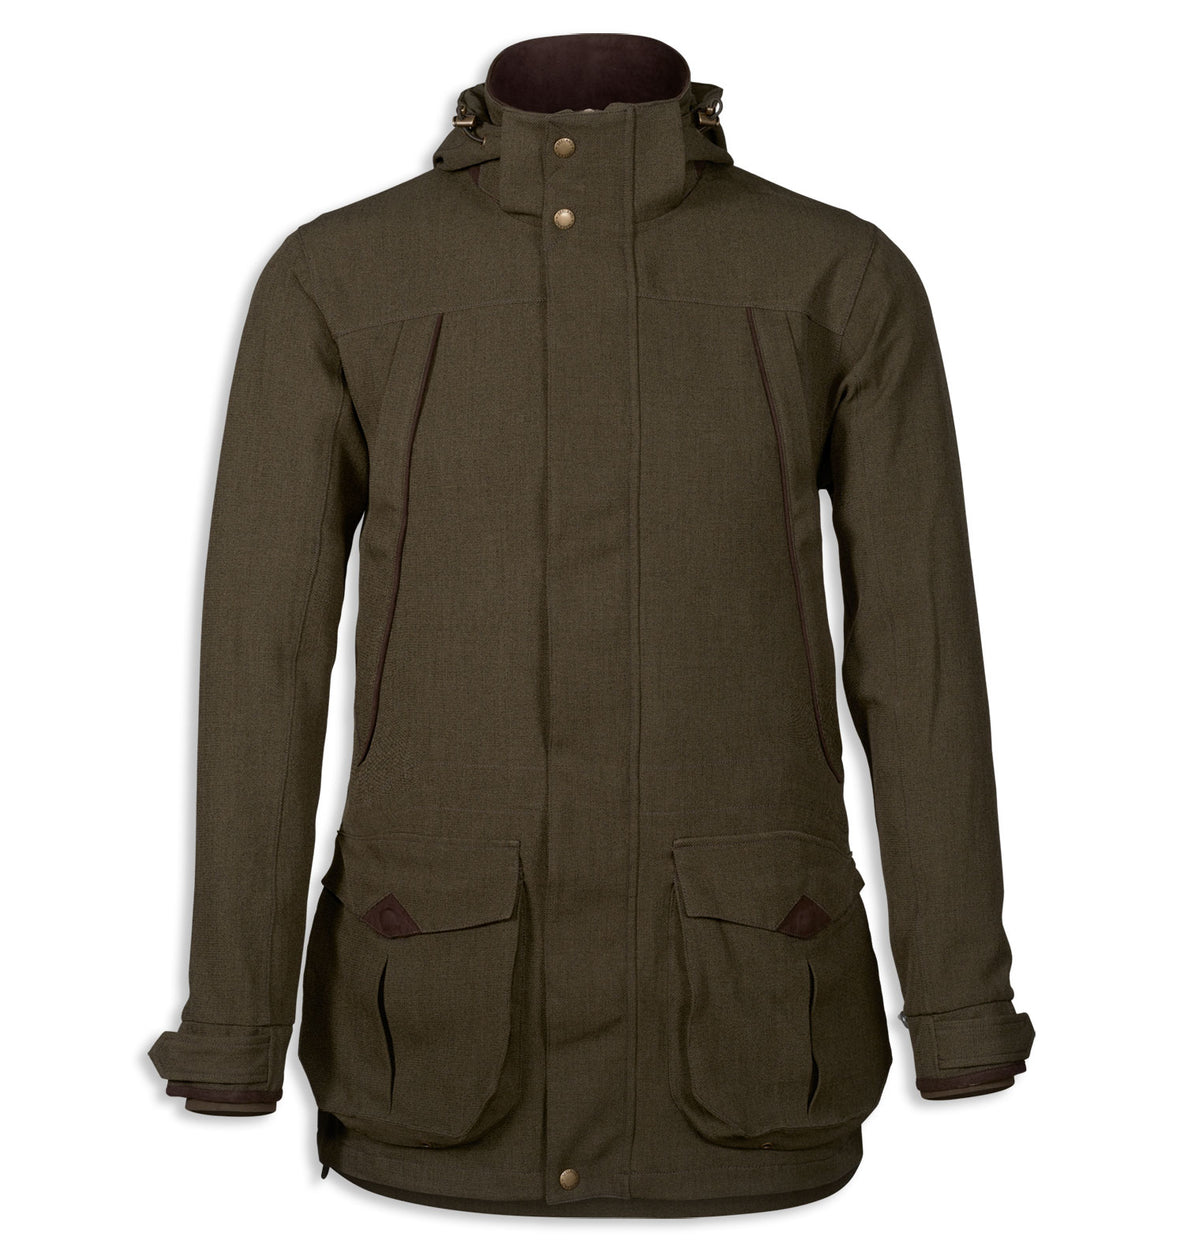 Seeland Woodcock Advanced Jacket | Shaded Olive